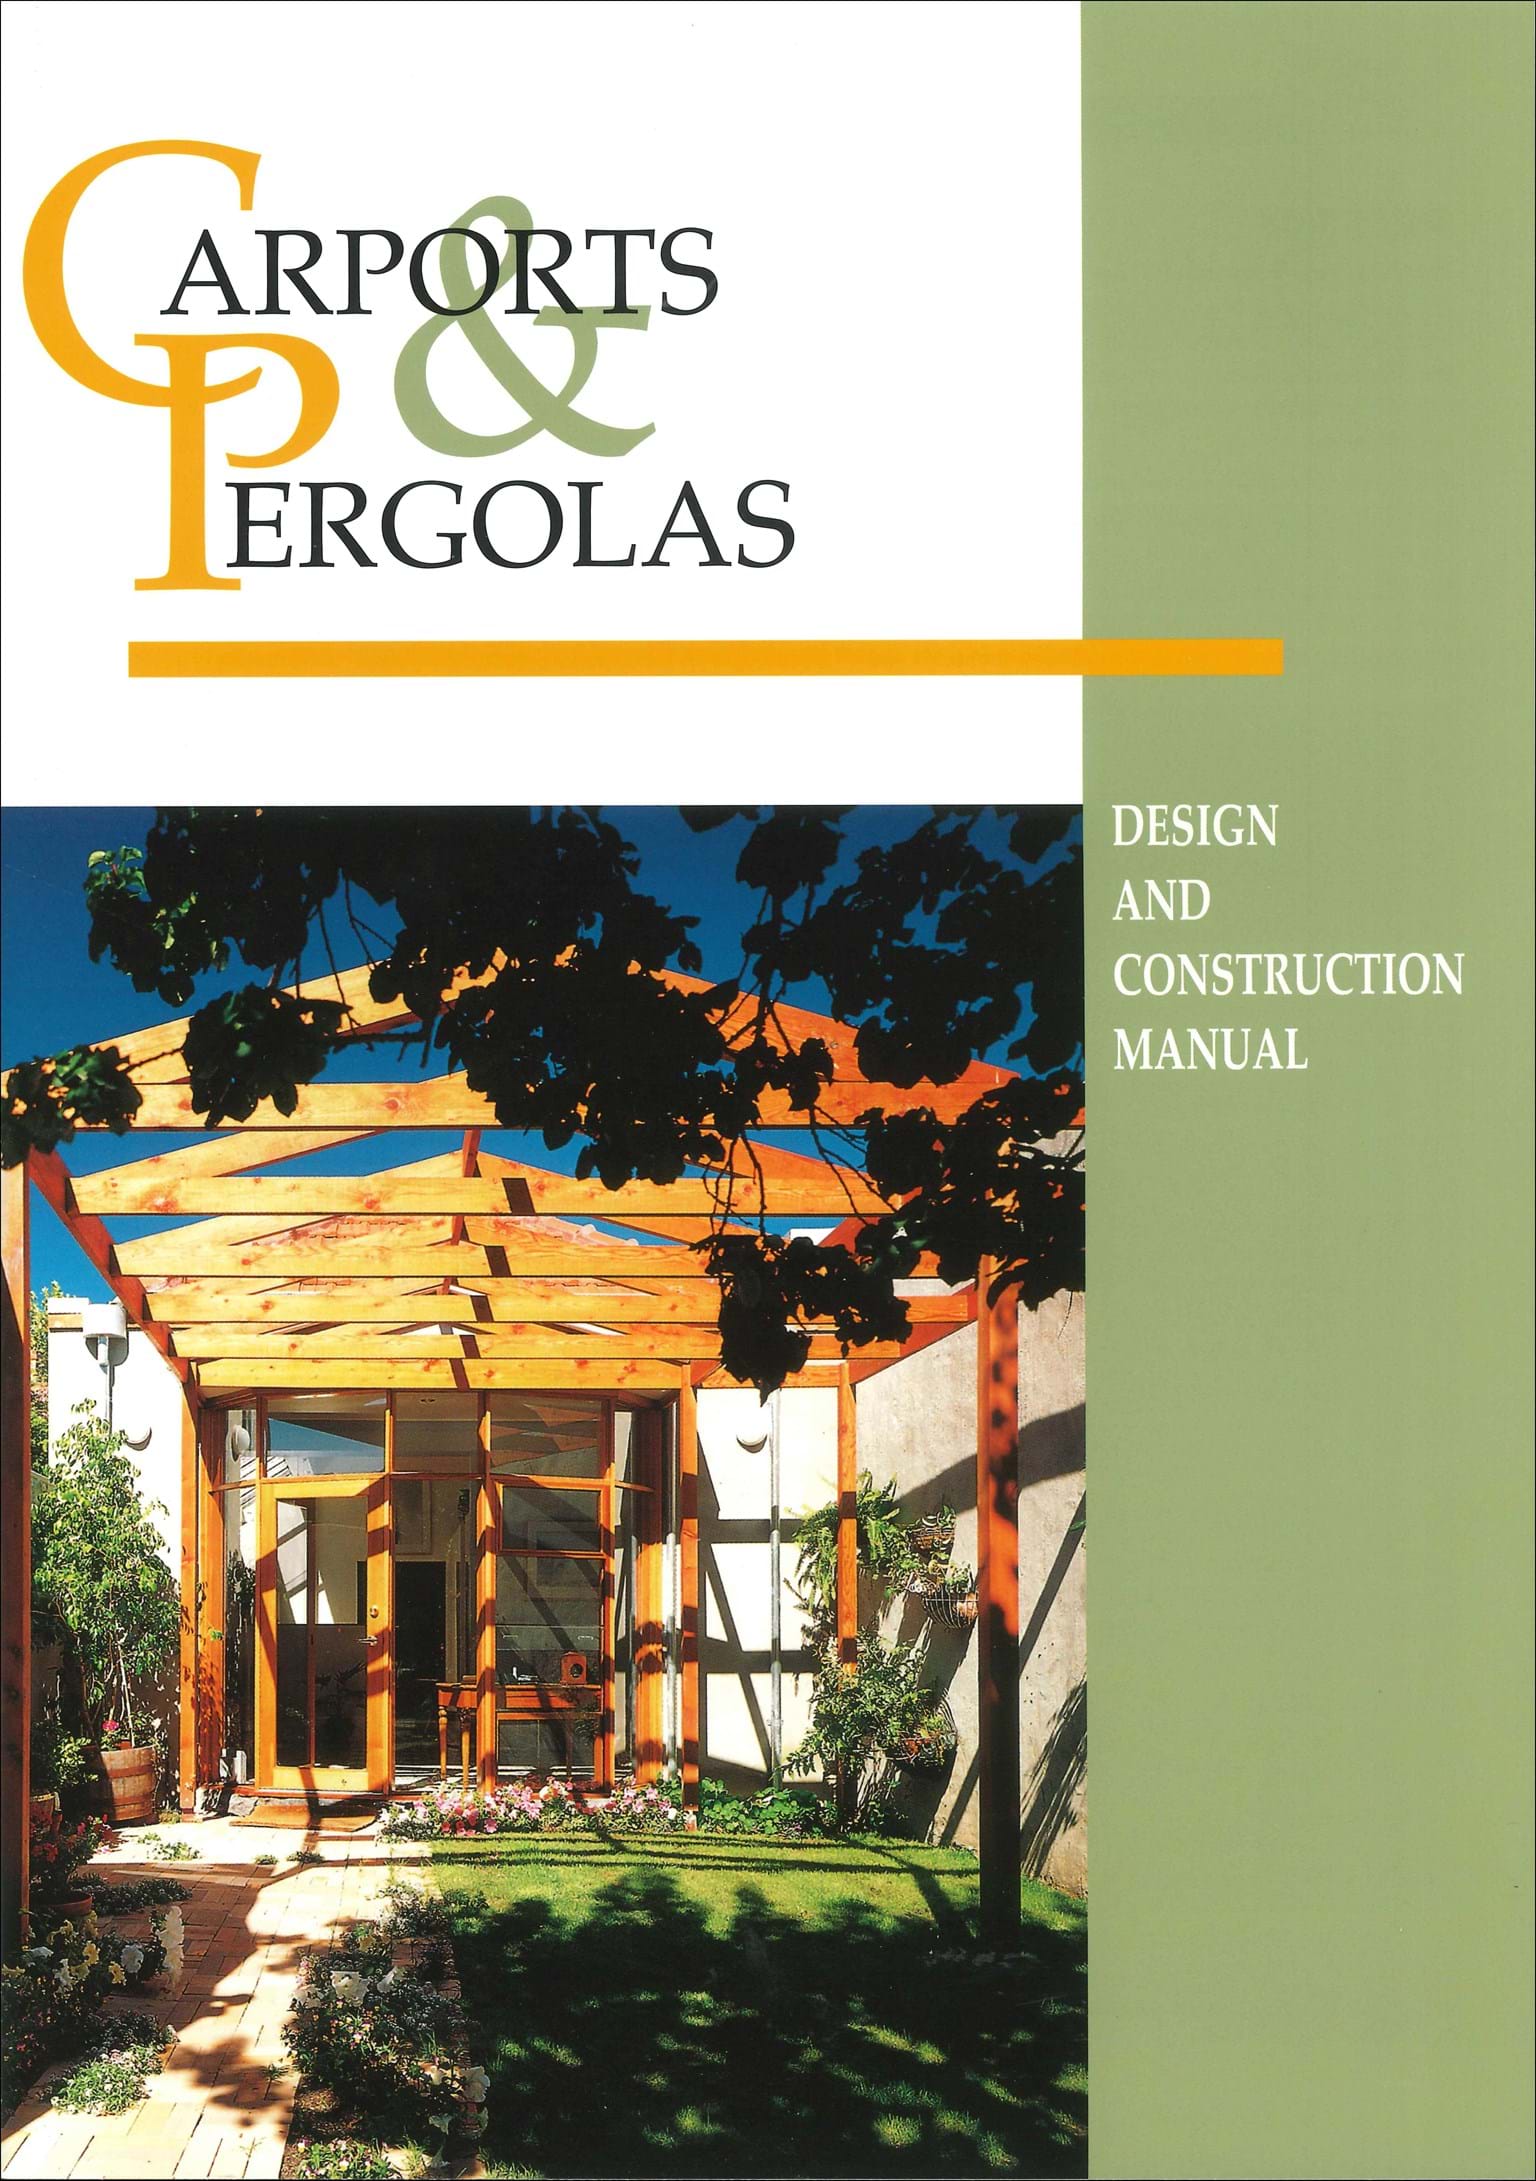 Carports & Pergolas: Design and Construction Manual - Carports Pergolas Design AnD Construction Manual Wfxpplaentpe